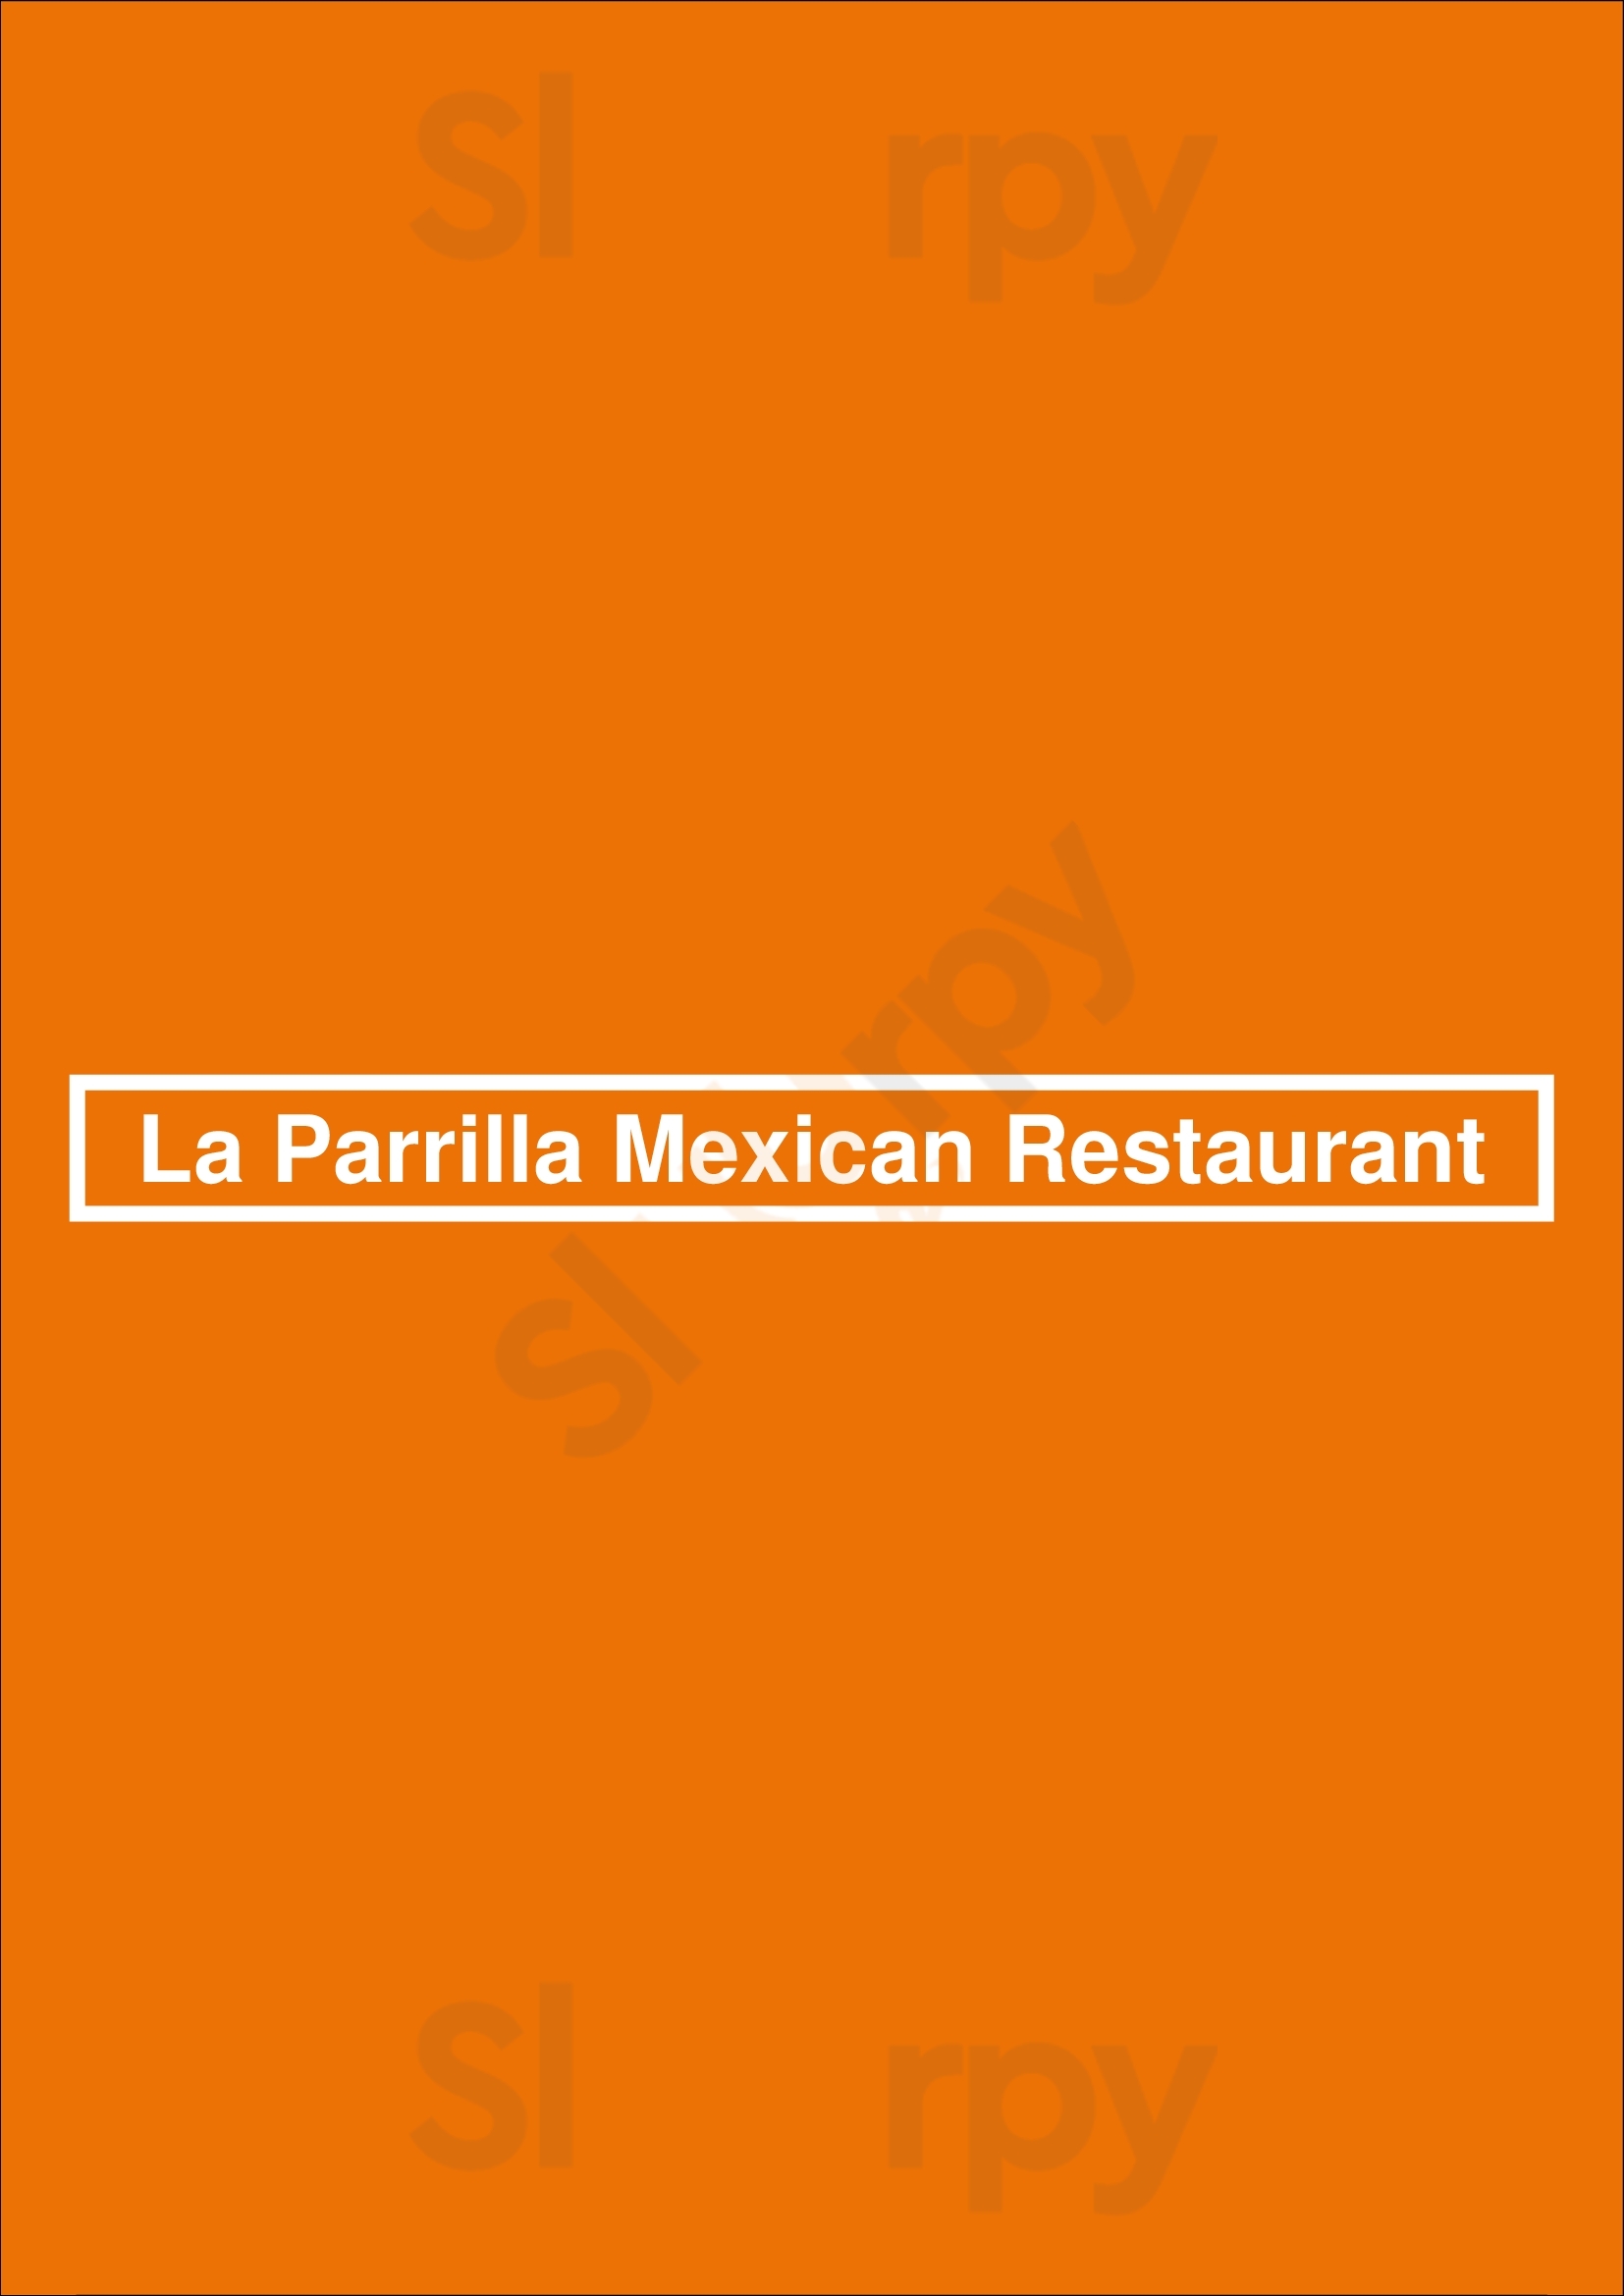 La Parrilla Mexican Restaurant Canton Menu - 1